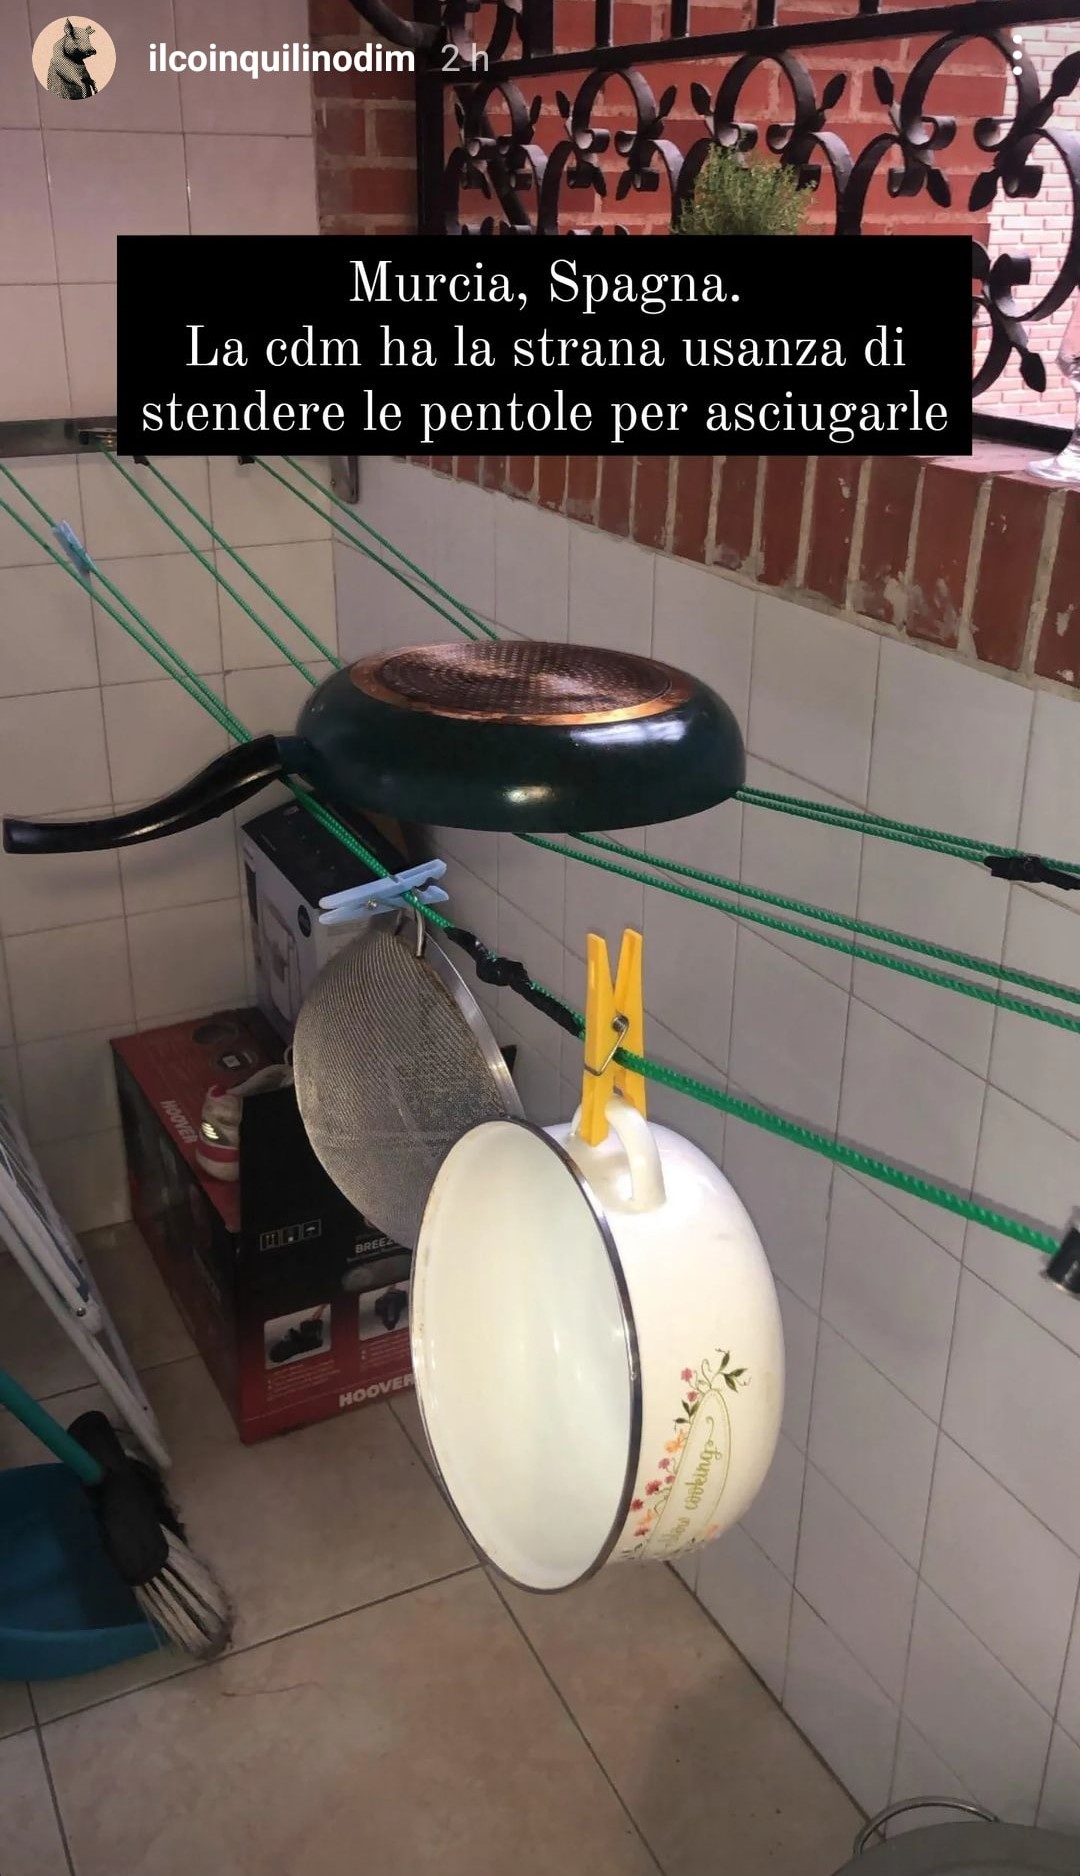 Una studentessa residente in Spagna asciuga così le sue pentole. Fonte: ilcoinquilinodim - Instagram